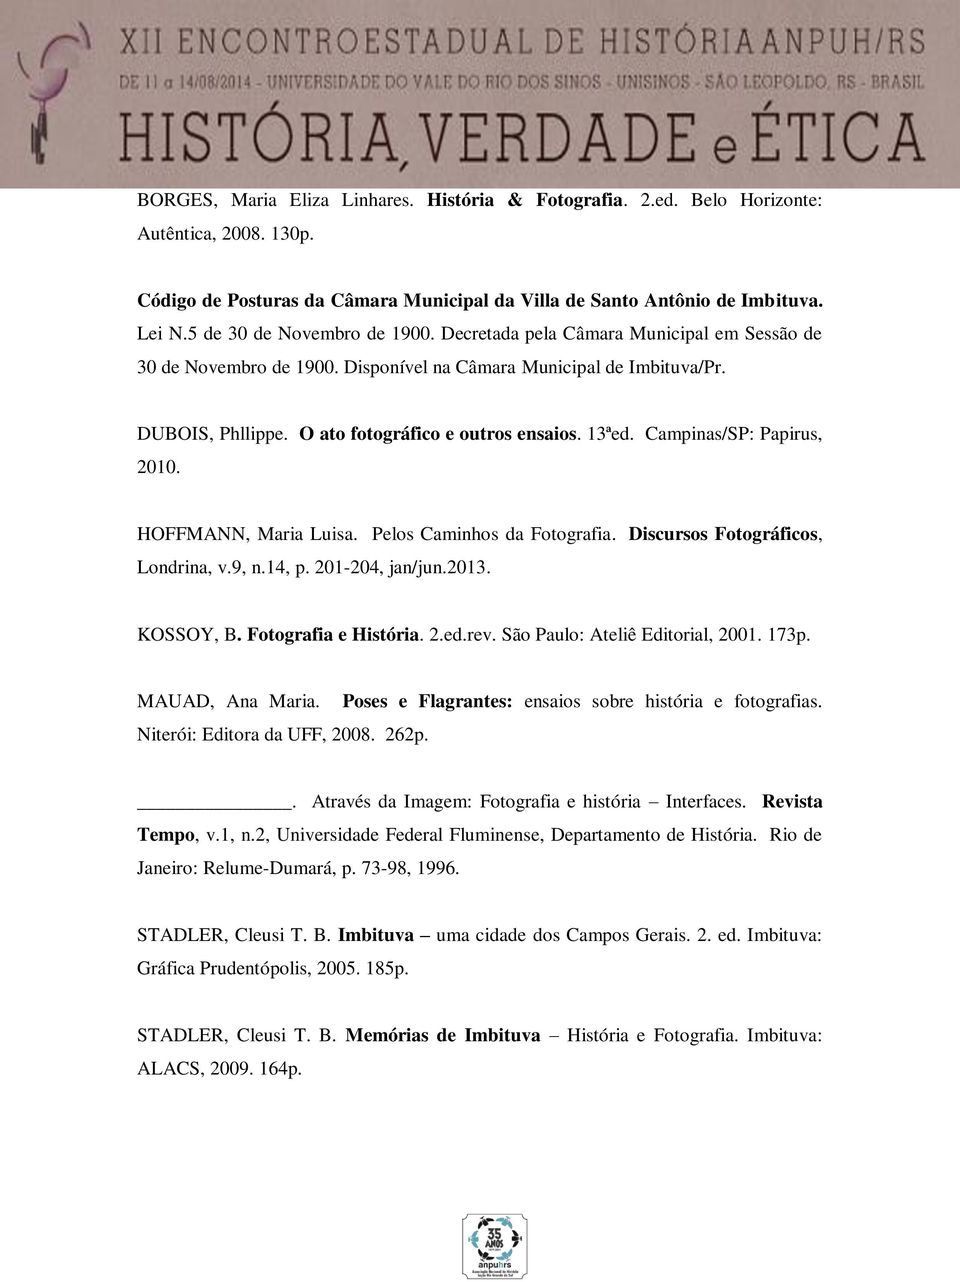 13ªed. Campinas/SP: Papirus, 2010. HOFFMANN, Maria Luisa. Pelos Caminhos da Fotografia. Discursos Fotográficos, Londrina, v.9, n.14, p. 201-204, jan/jun.2013. KOSSOY, B. Fotografia e História. 2.ed.rev.